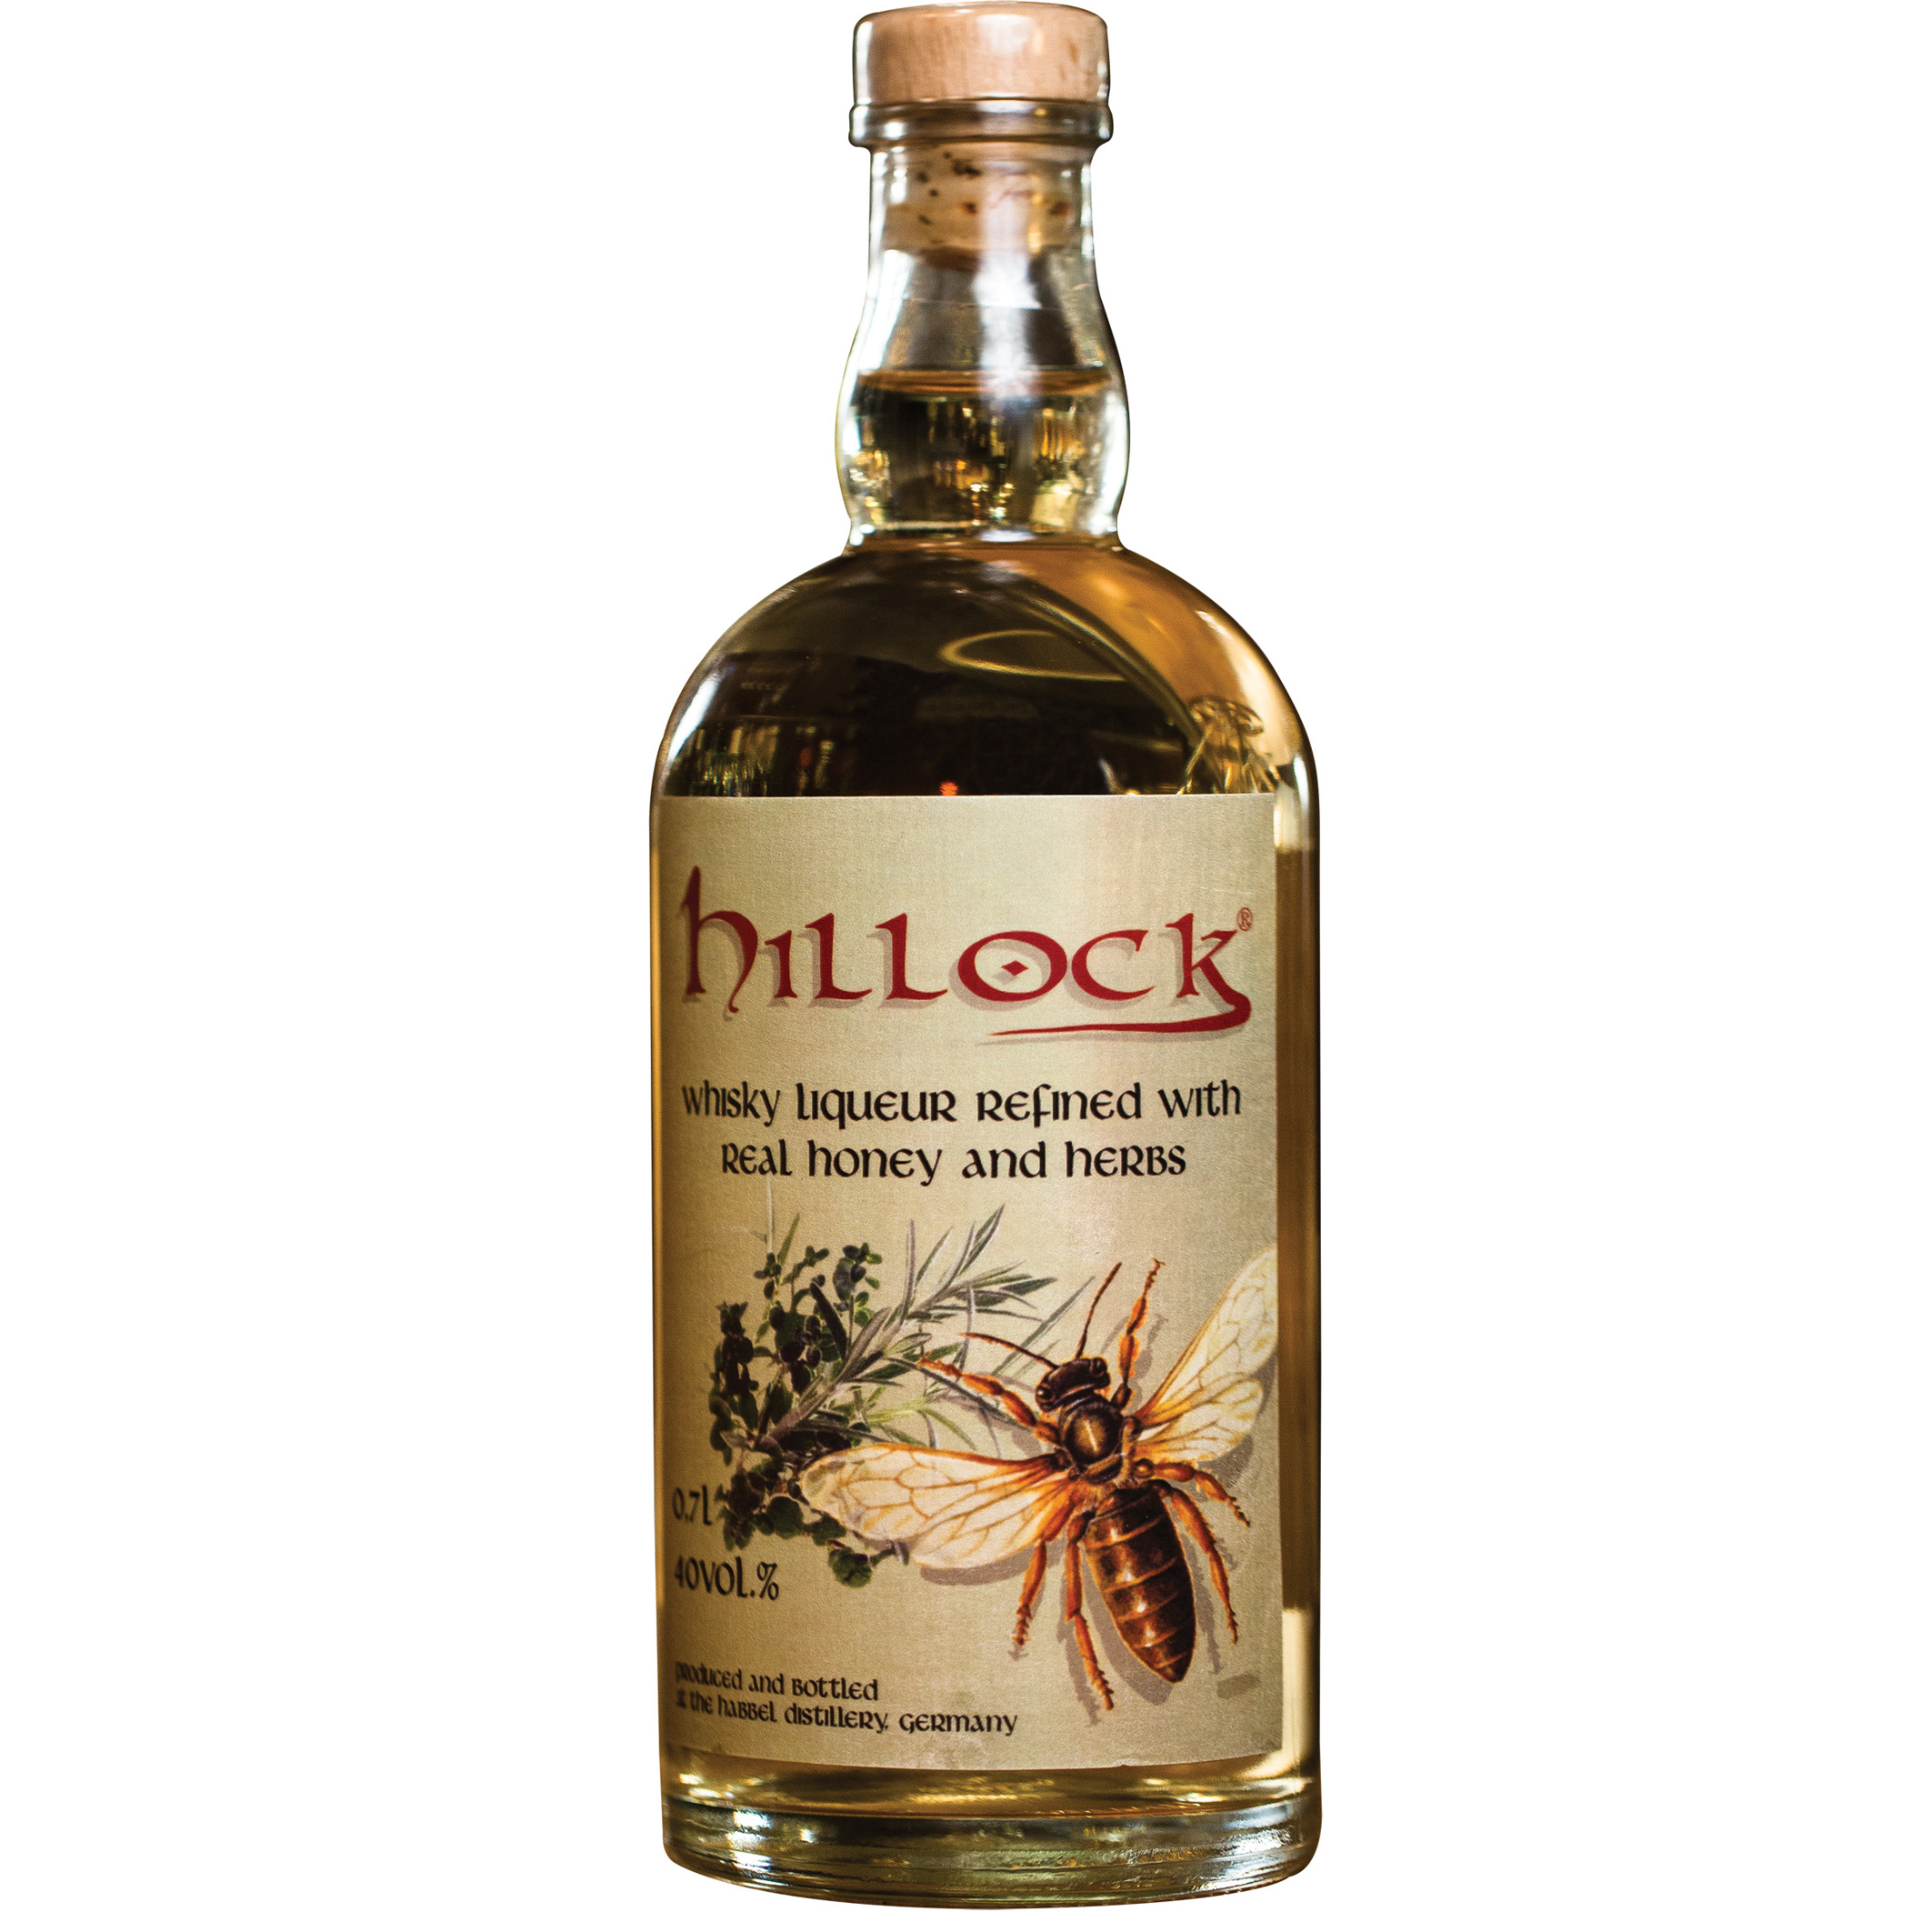 Hillock Honey & Herbs, Whisky  Liqueur (40% vol)